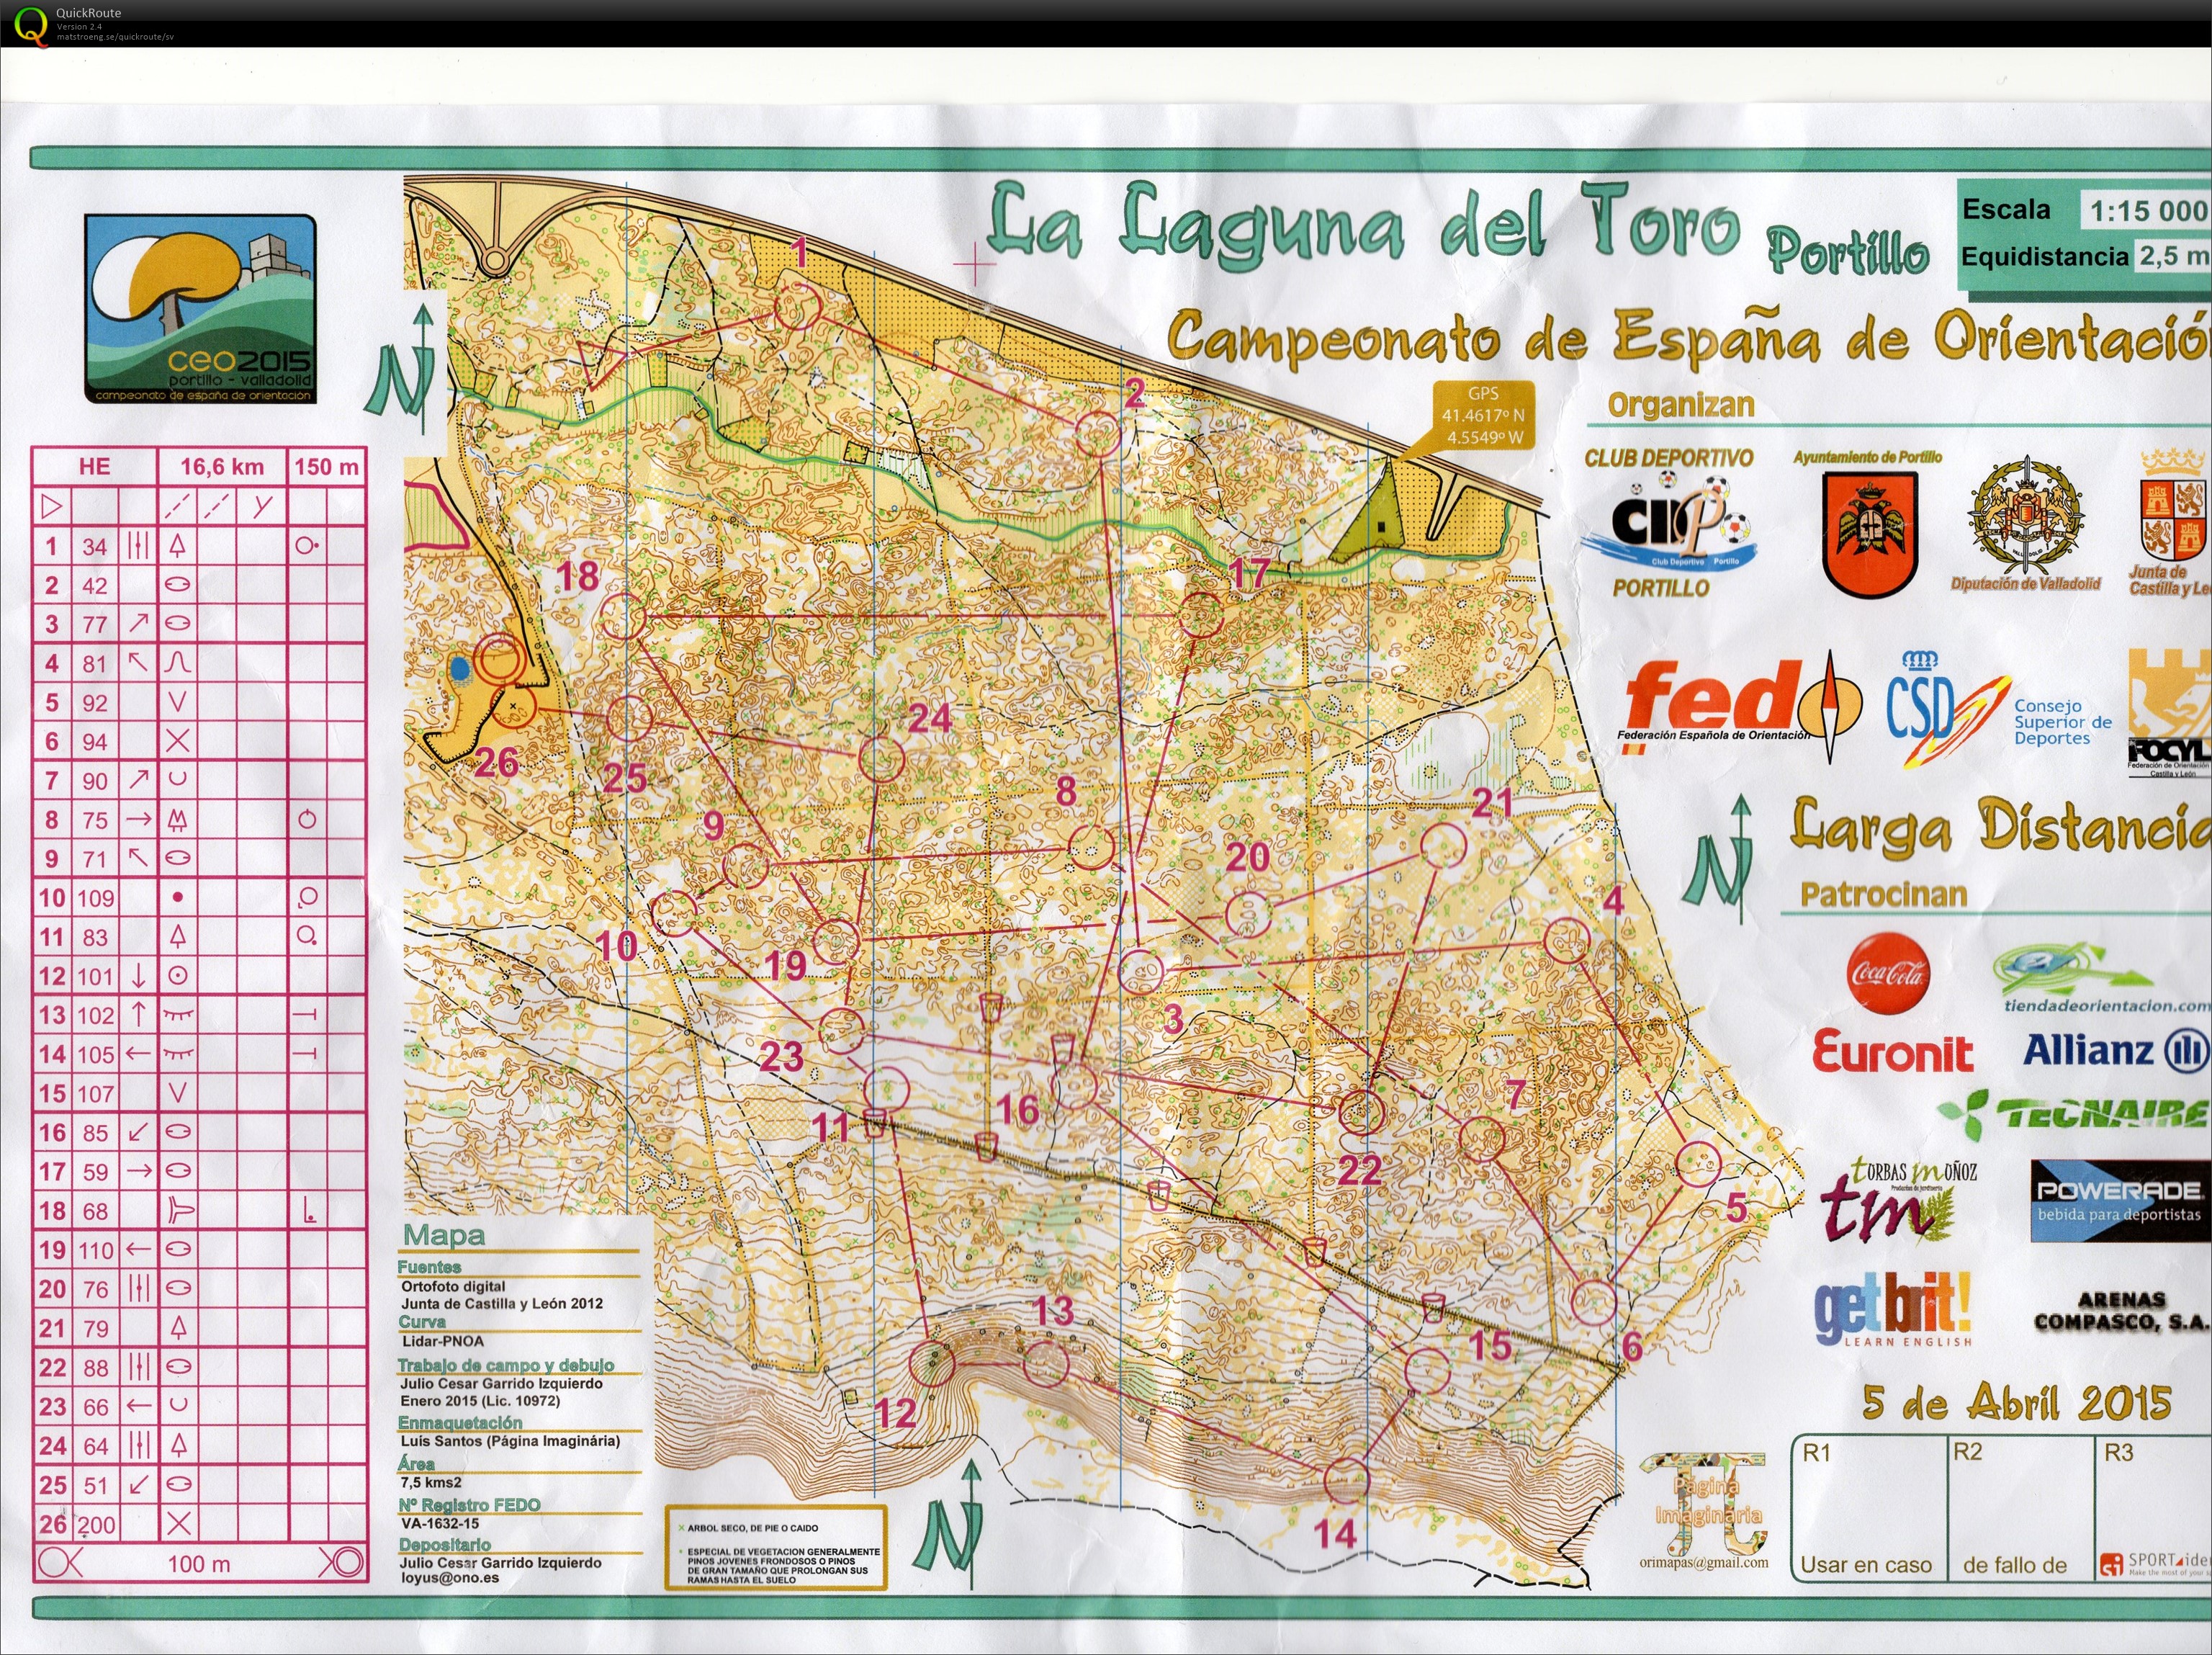 Campeonato de España de orientación (CEO)- Long (05.04.2015)